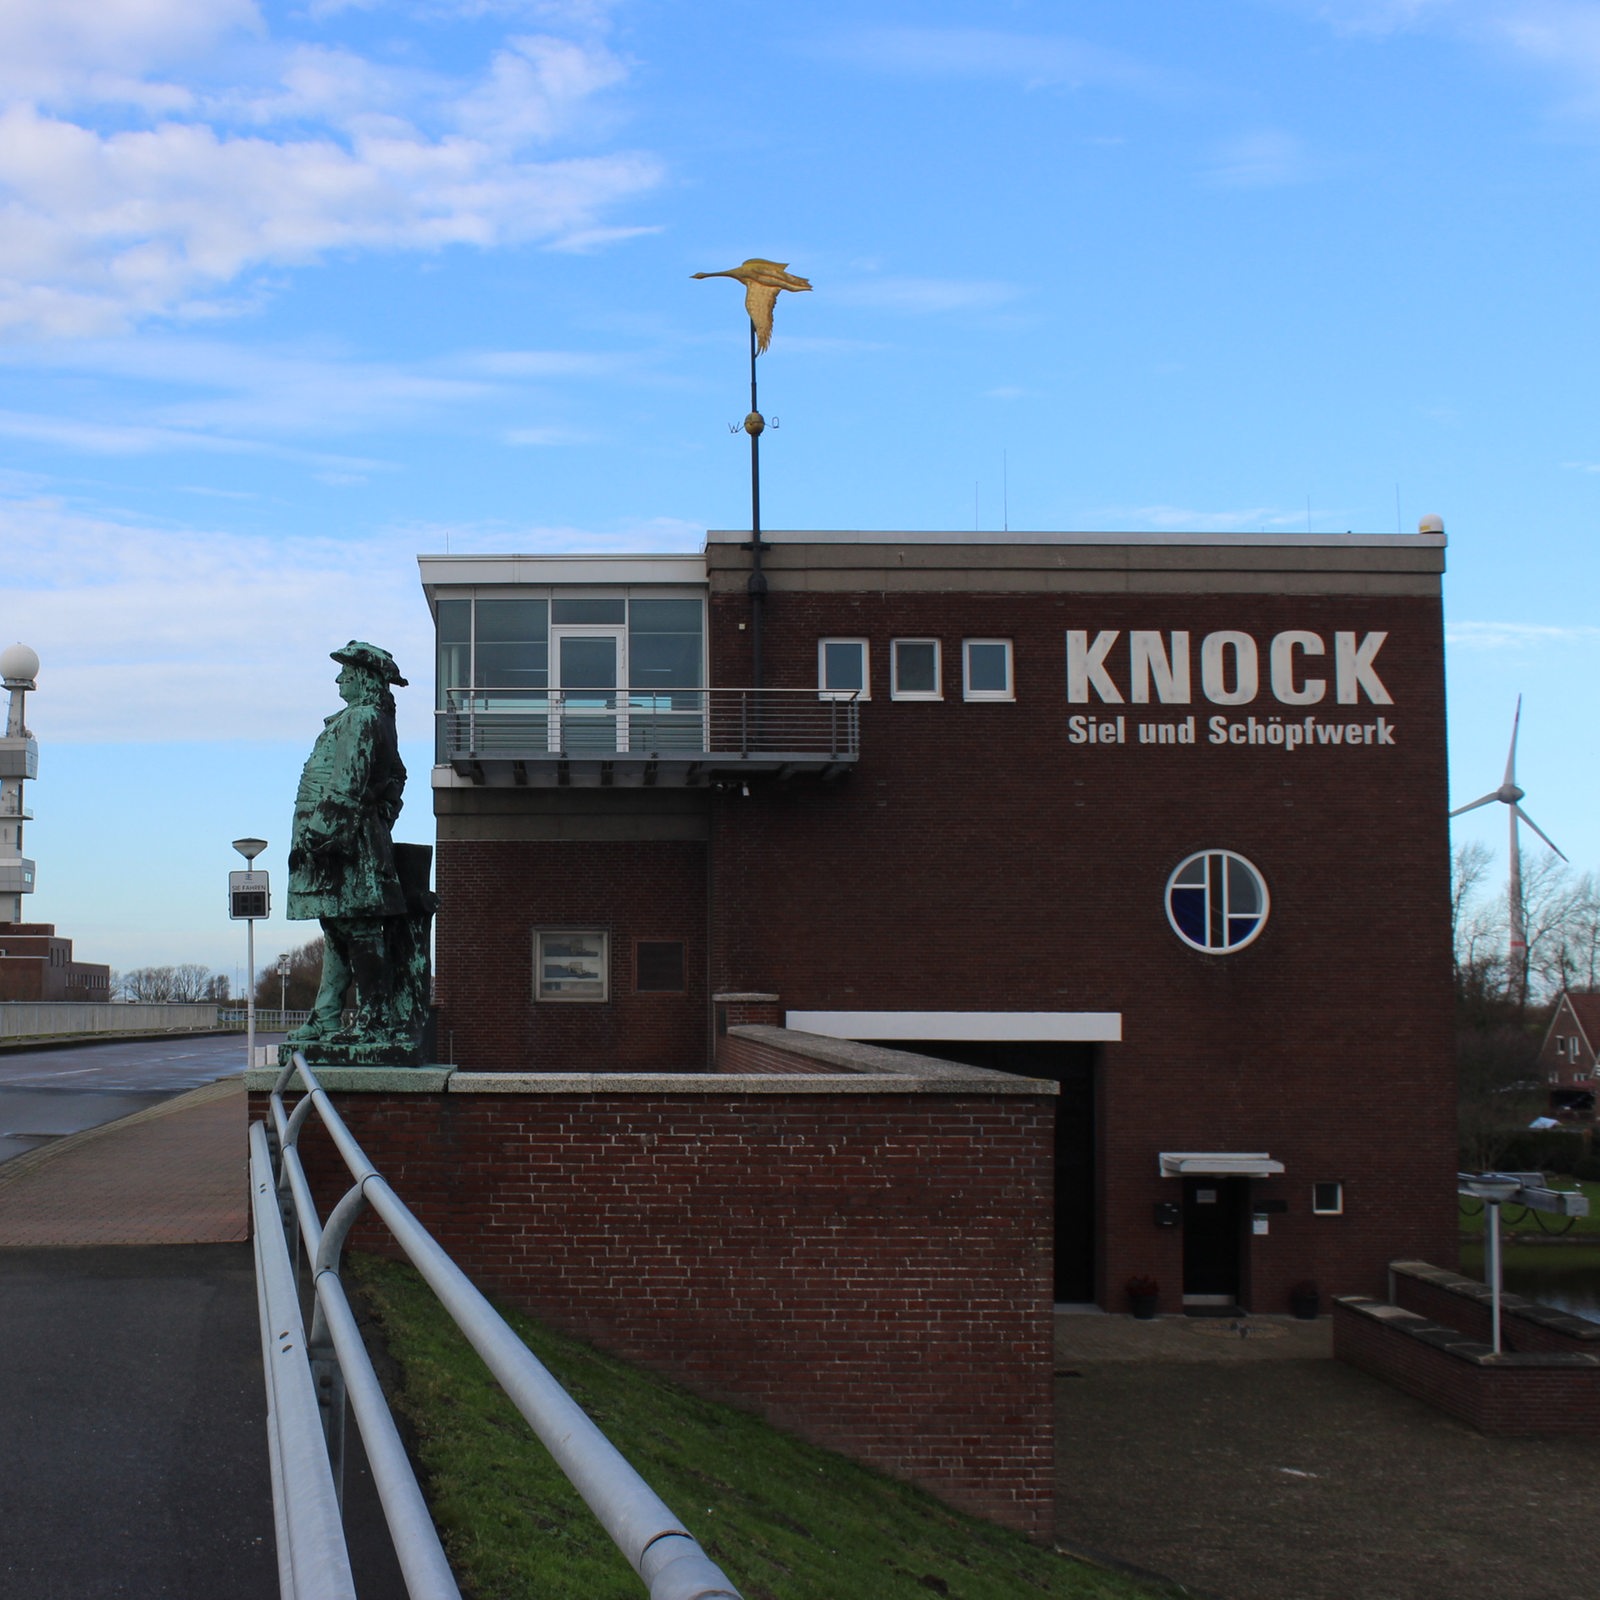 Das Siel und Schöpfwerk Knock bei Emden, davor eine Bronzeskulptur